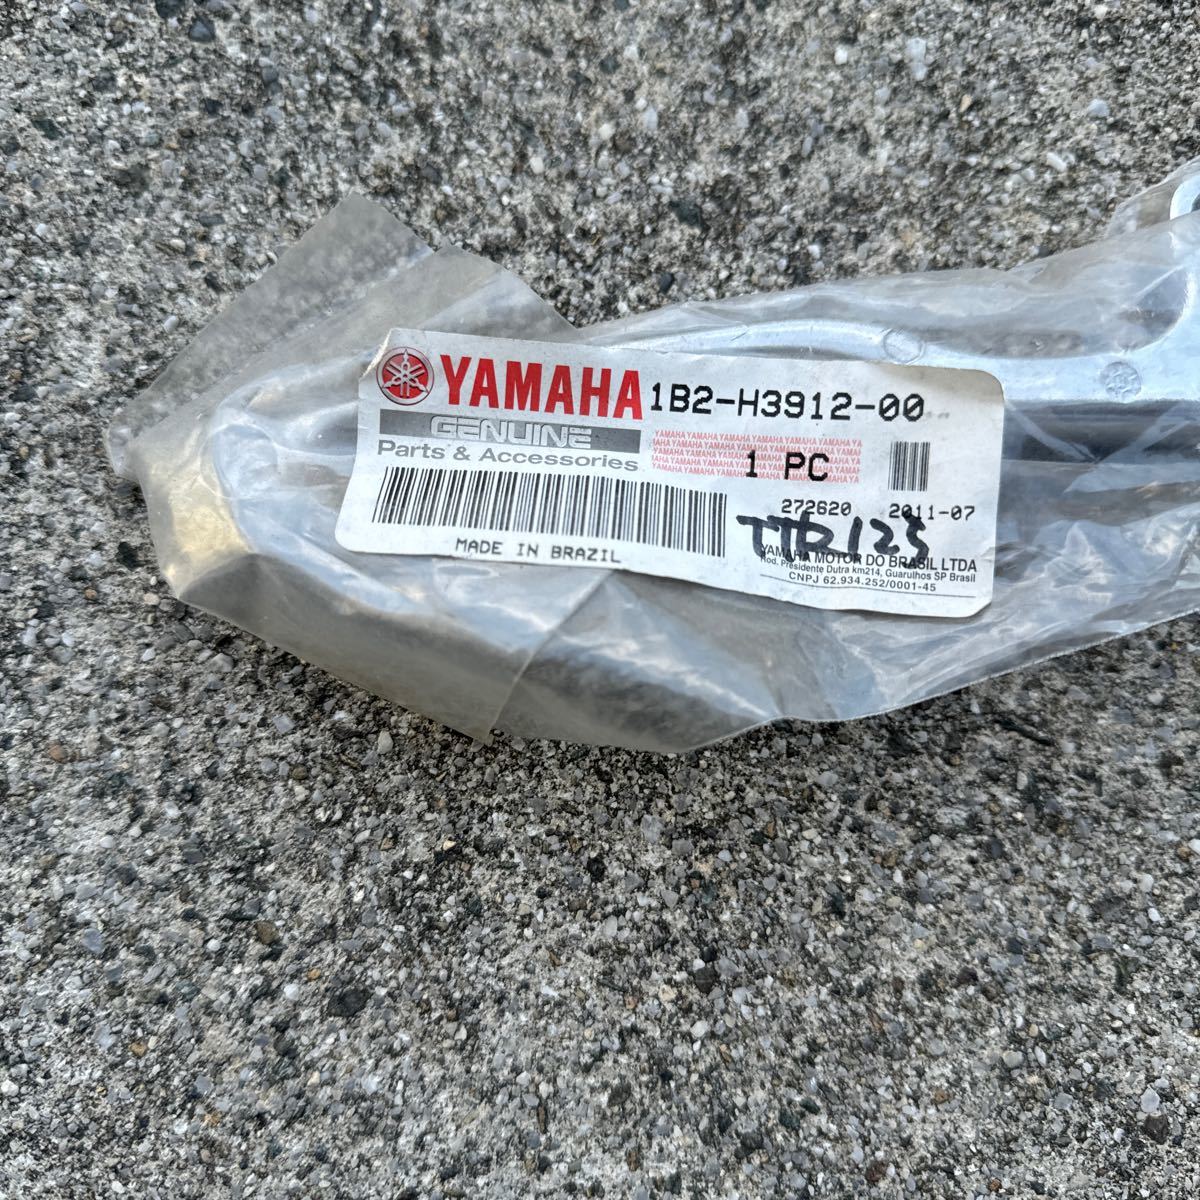 ヤマハ TTR125 クラッチレバー 新品の画像1